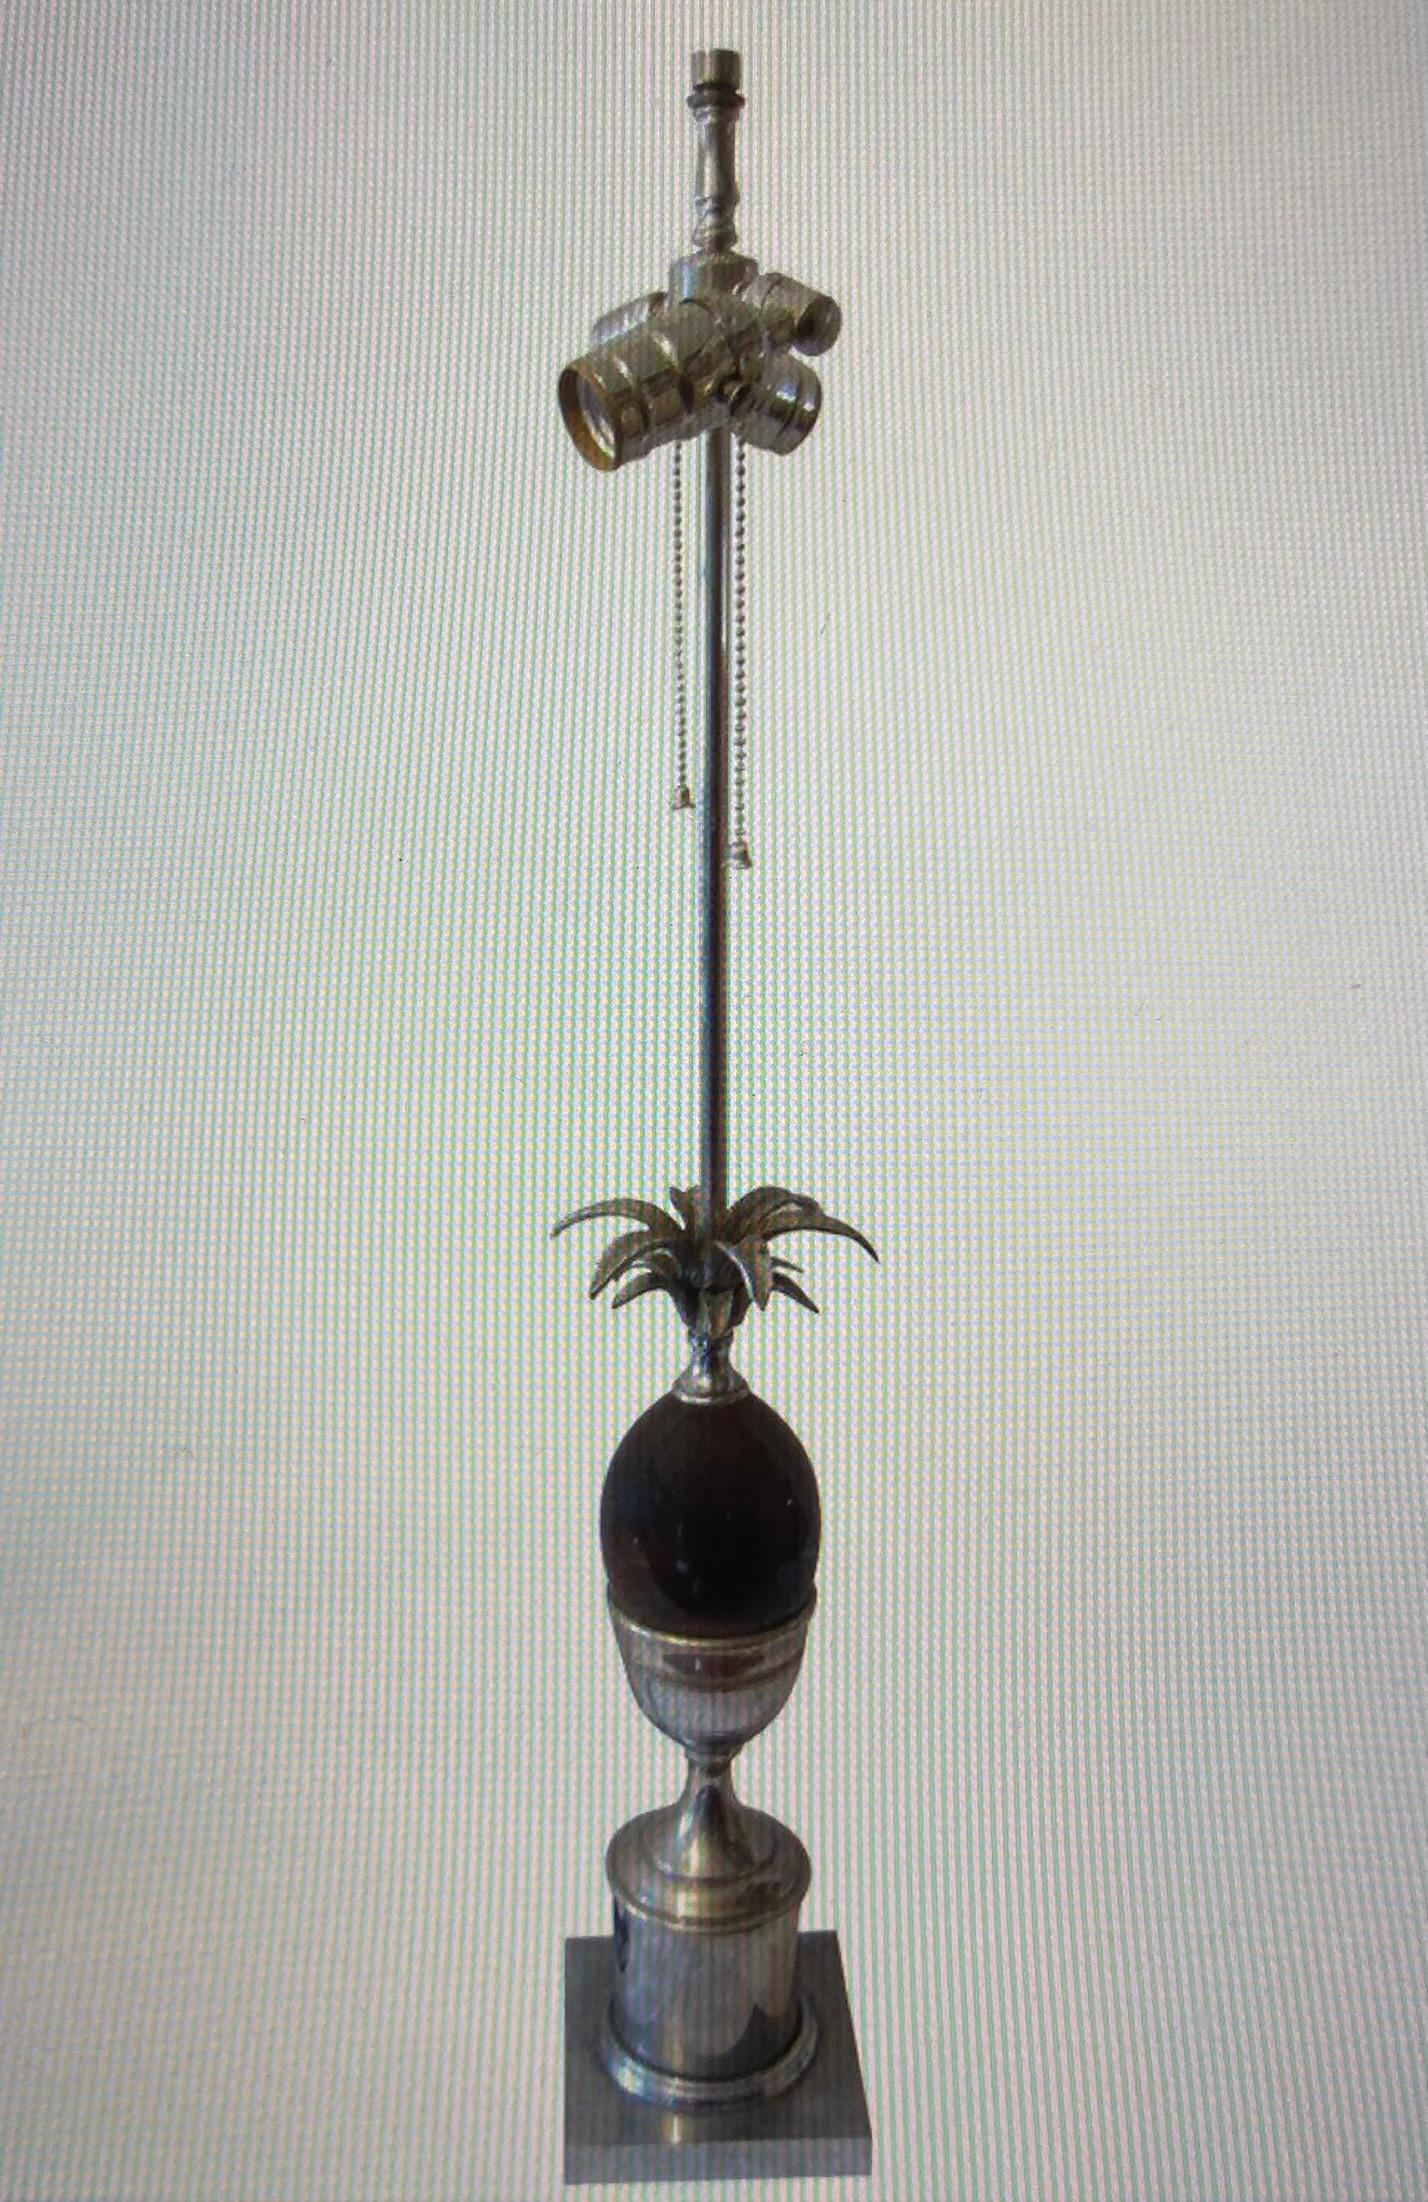 Ananas-Tischlampe aus Stahl und Marmor von Maison Charles, Paris, ca. 1970er Jahre.